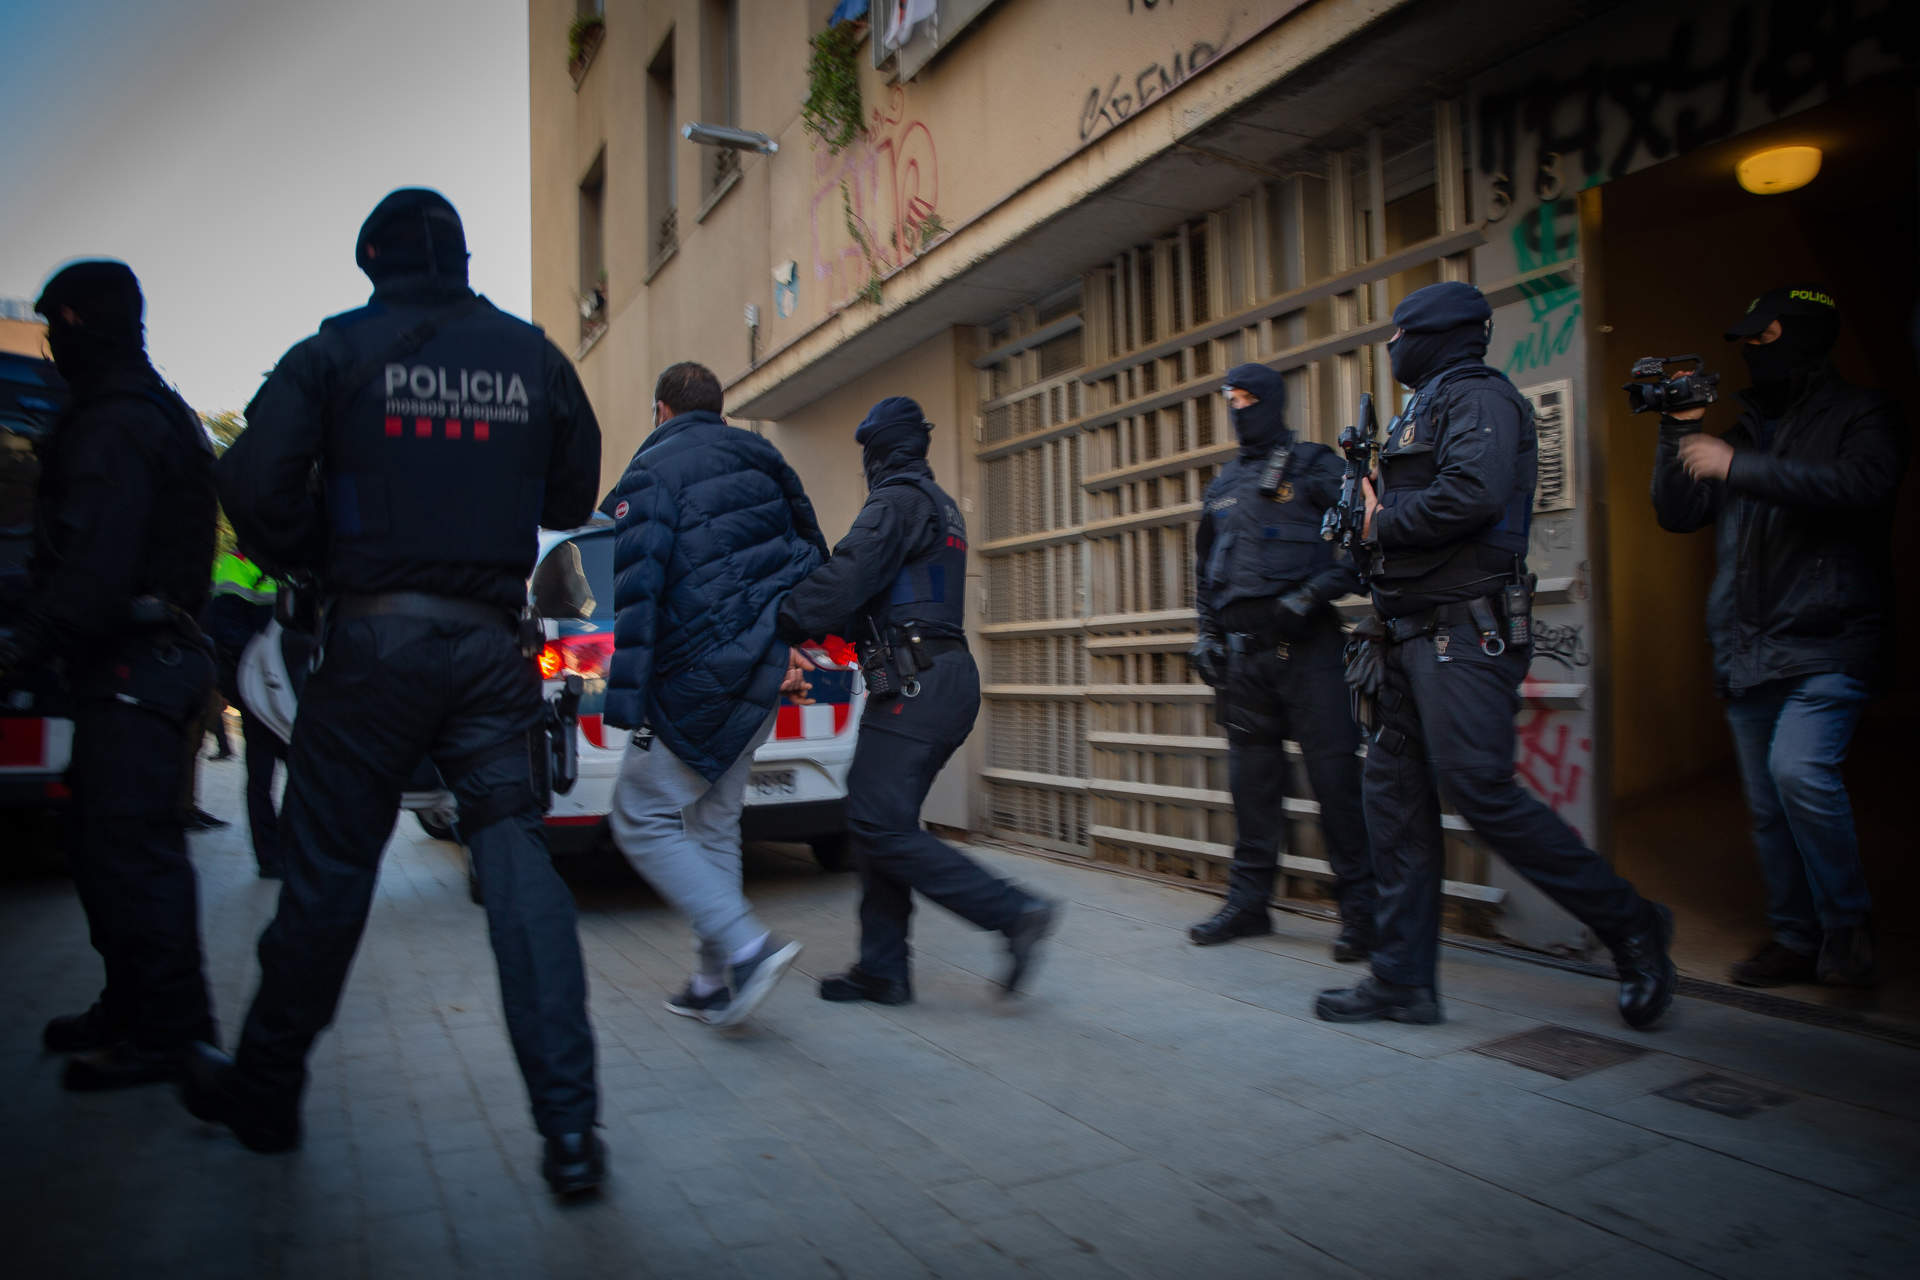 La radicalización yihadista en España lleva en general a funciones no violentas pero persiste la amenaza, según Elcano